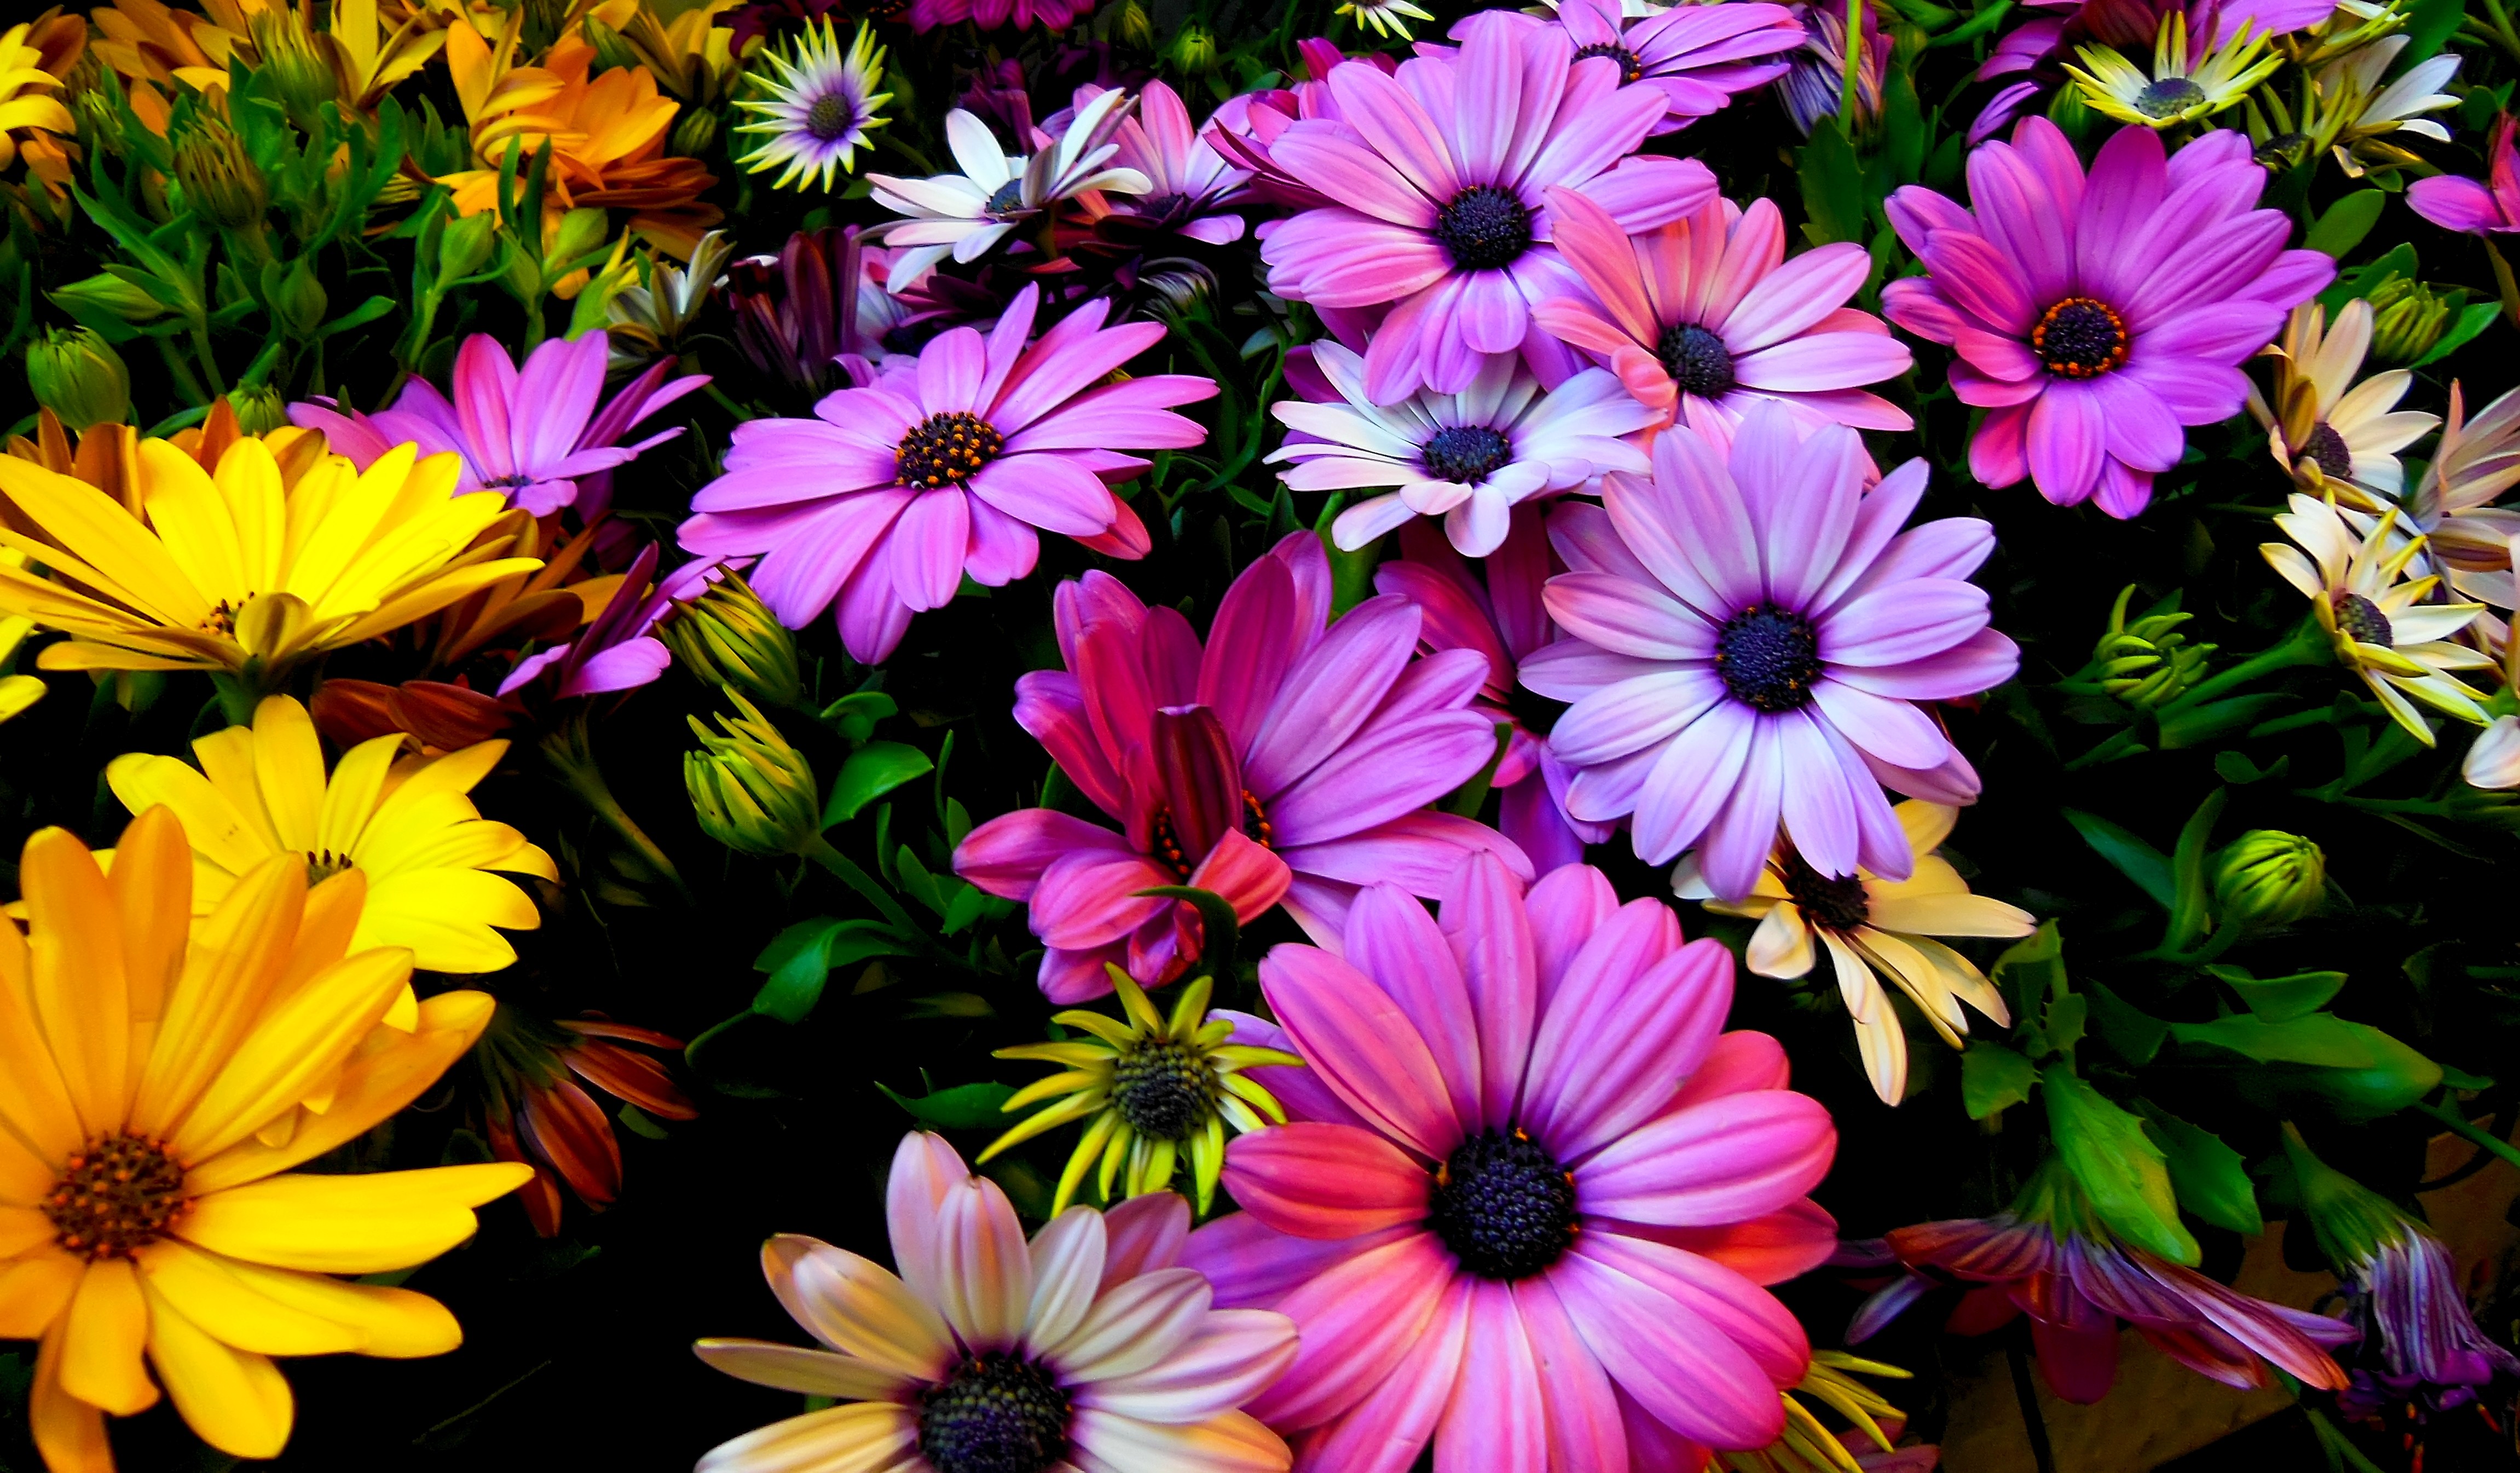 Фото на заставки на телефон цветы